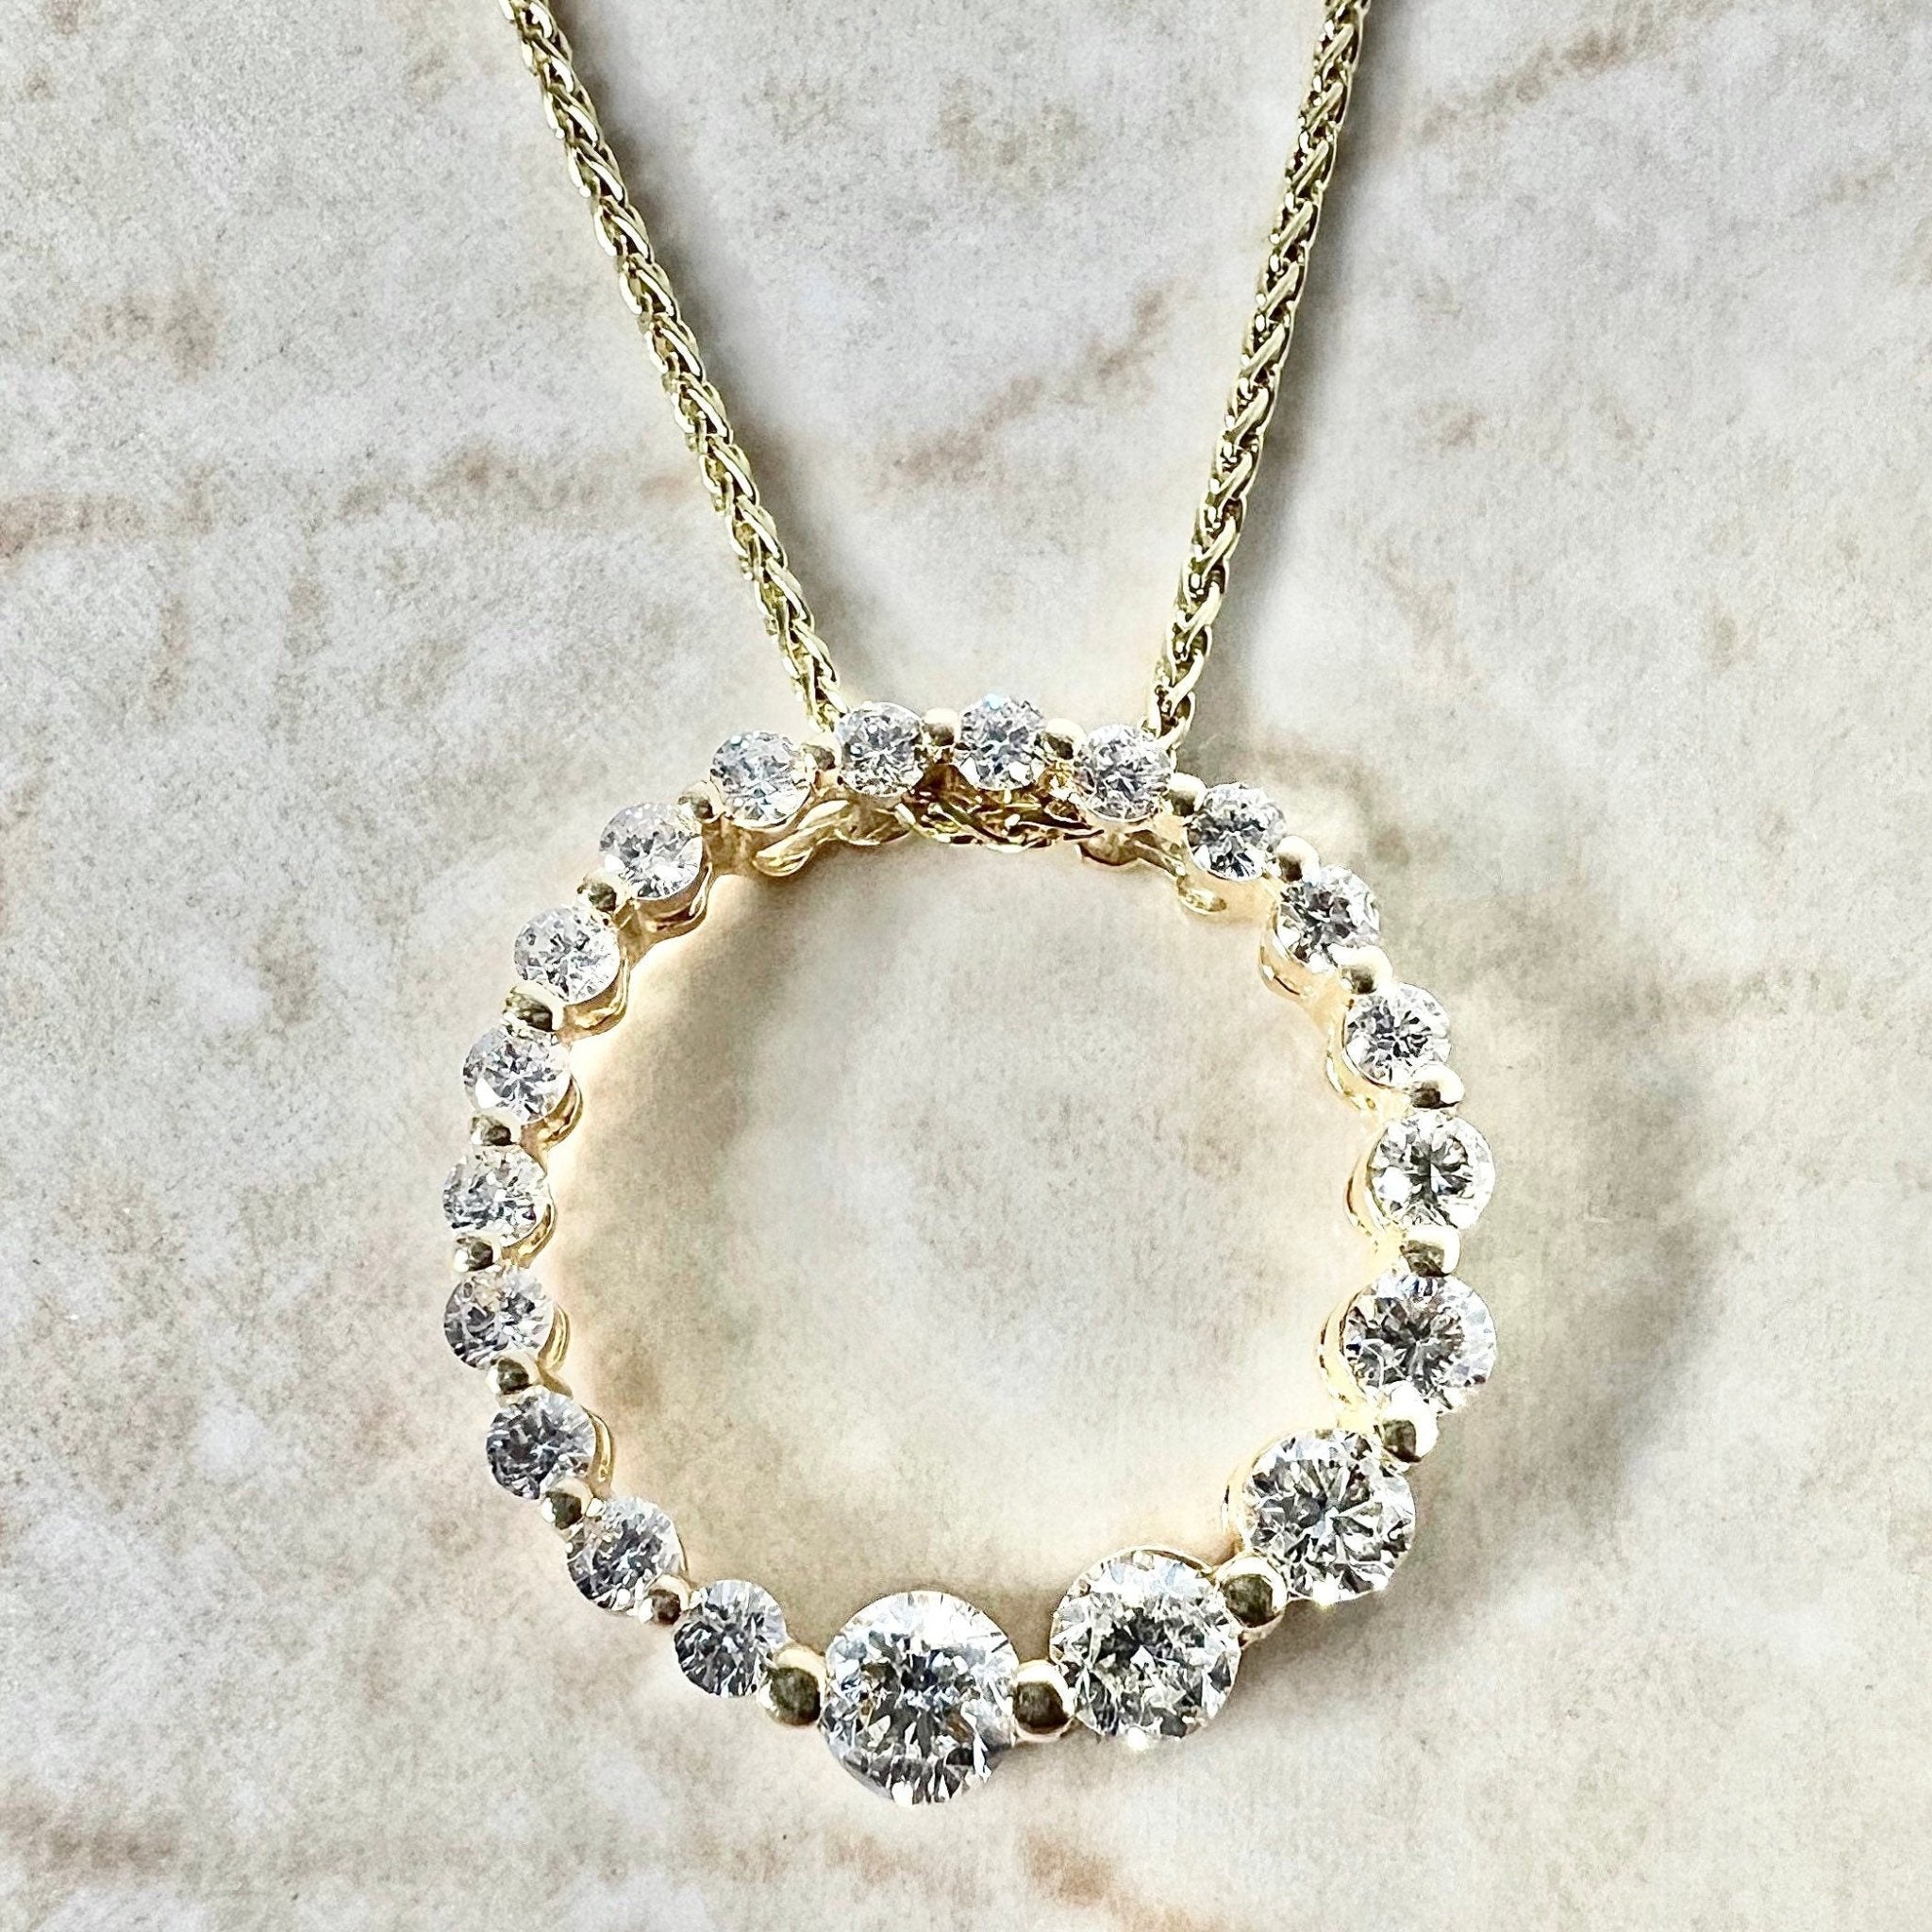 1.51 Carat Diamond Pendant and 14k Necklace ⋆ Diamond Exchange Houston